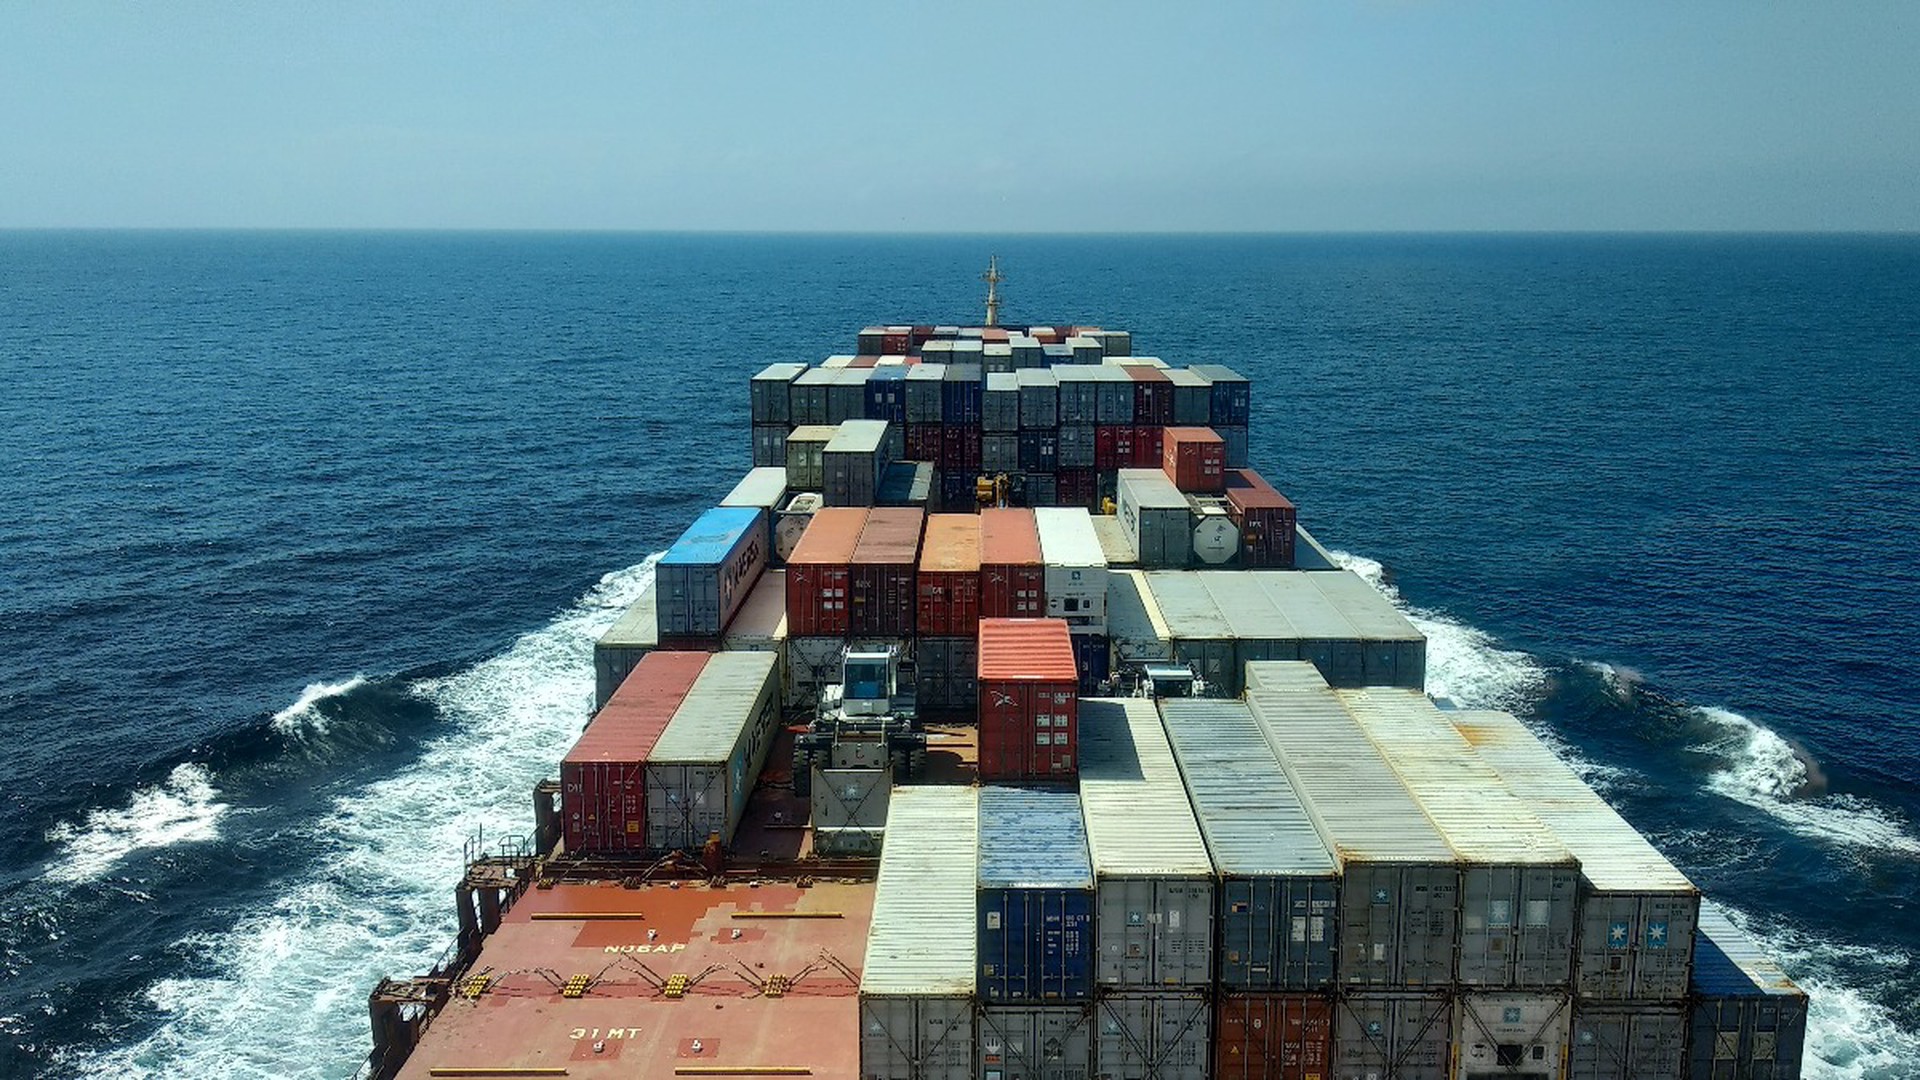 Аналитик: европейцы не будут раздувать тему повреждения Balticconnector китайским судном